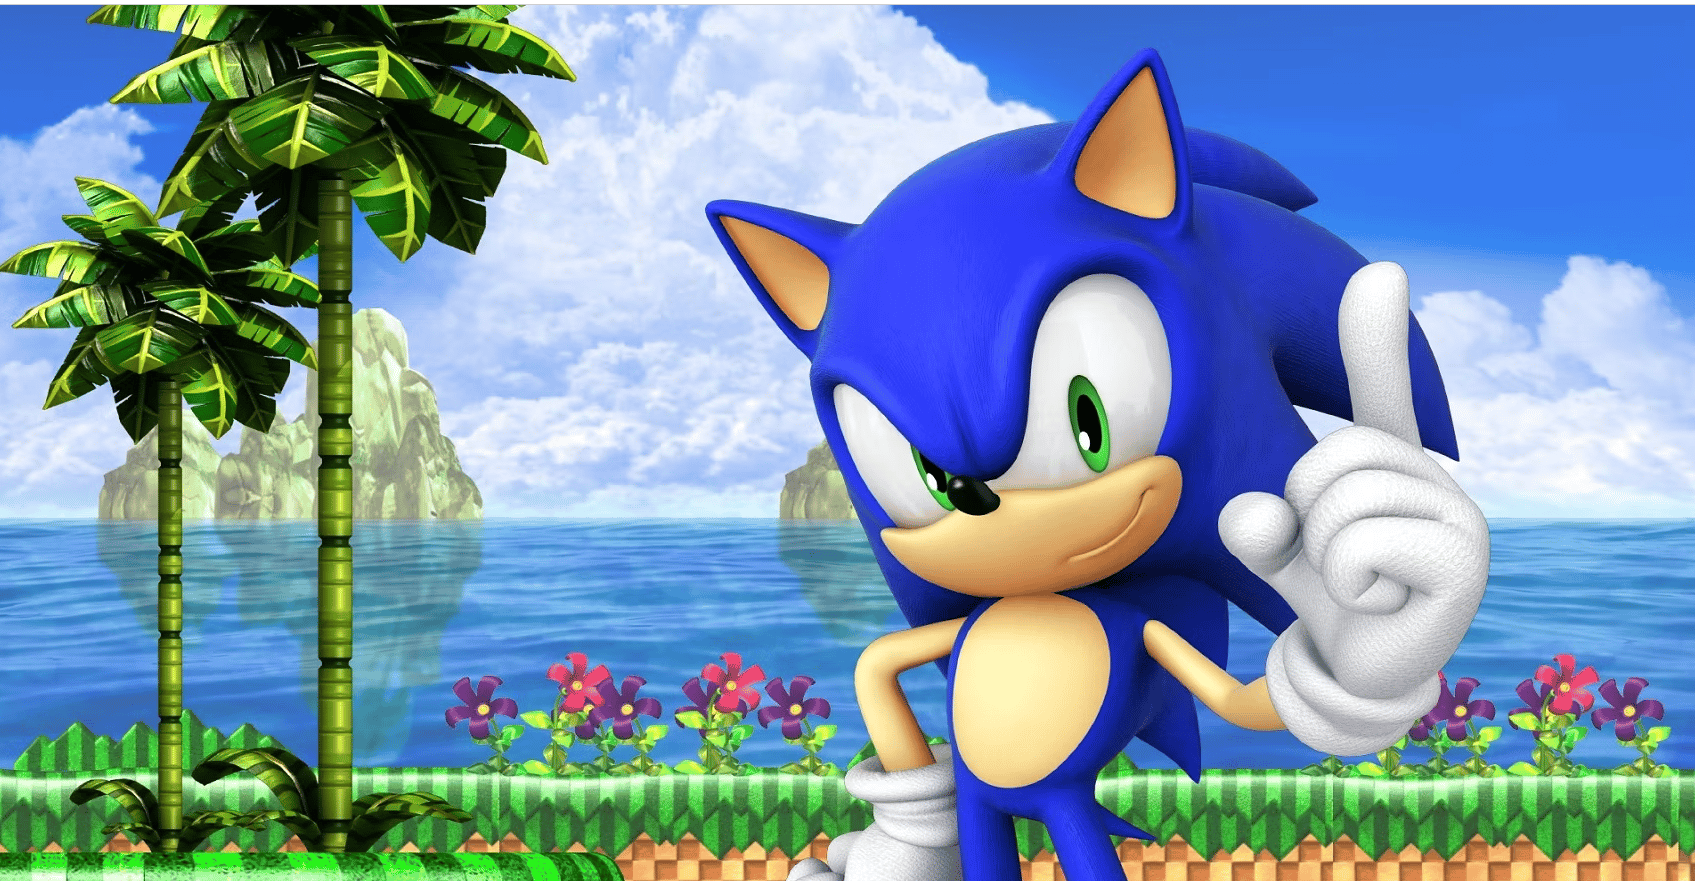 Sonic frontiers director conferma altri giochi 2D